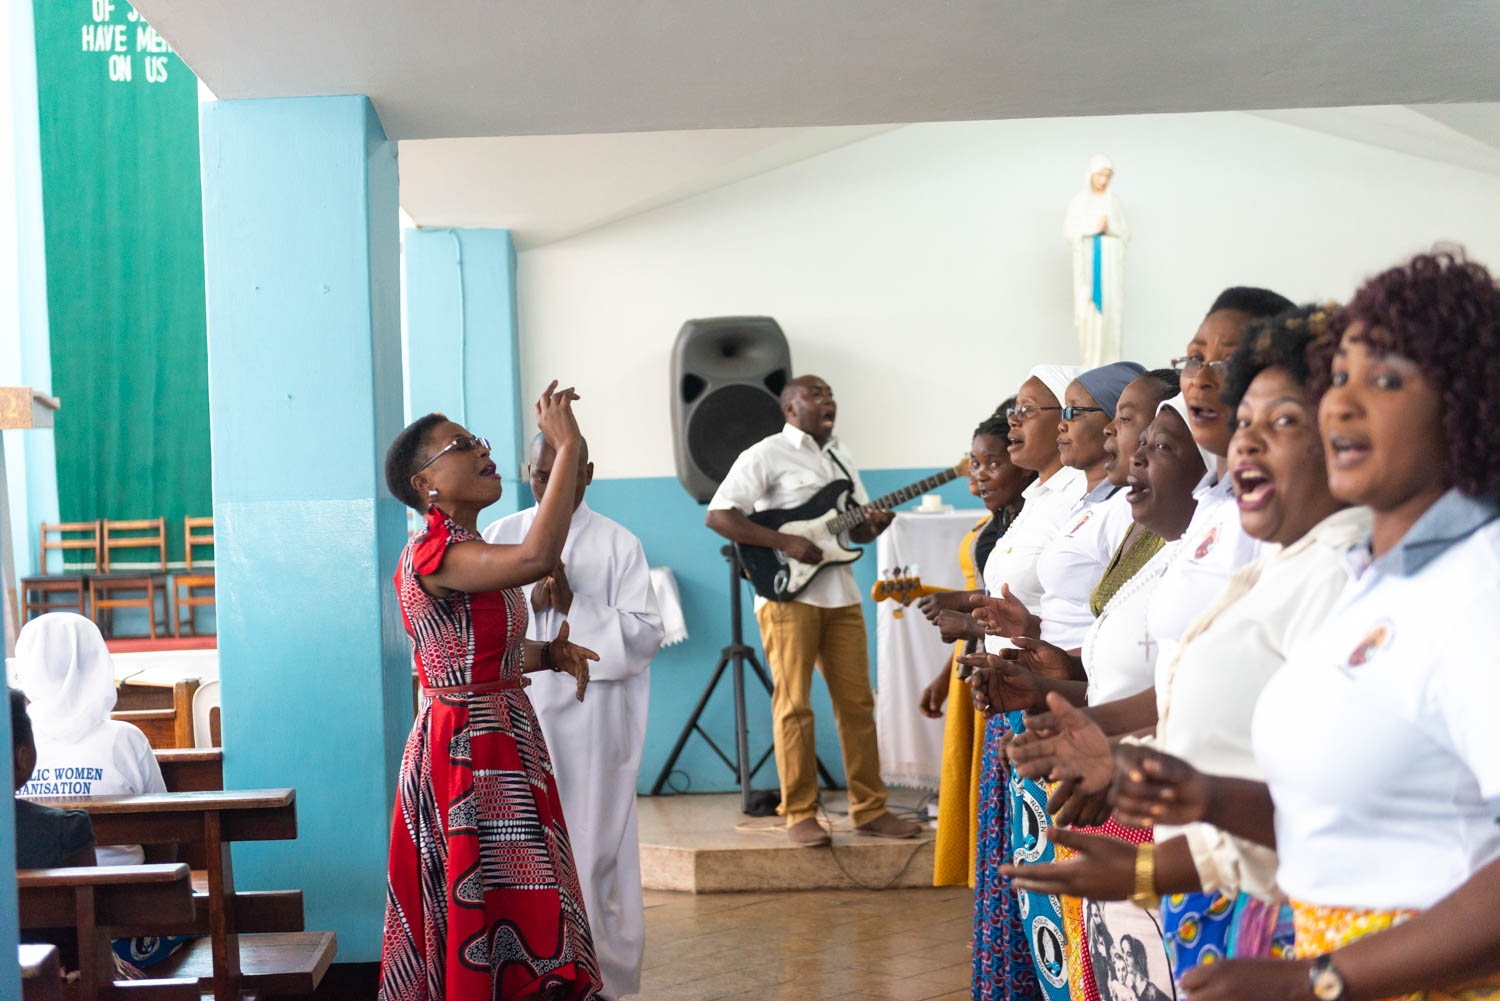 A choir performing at church